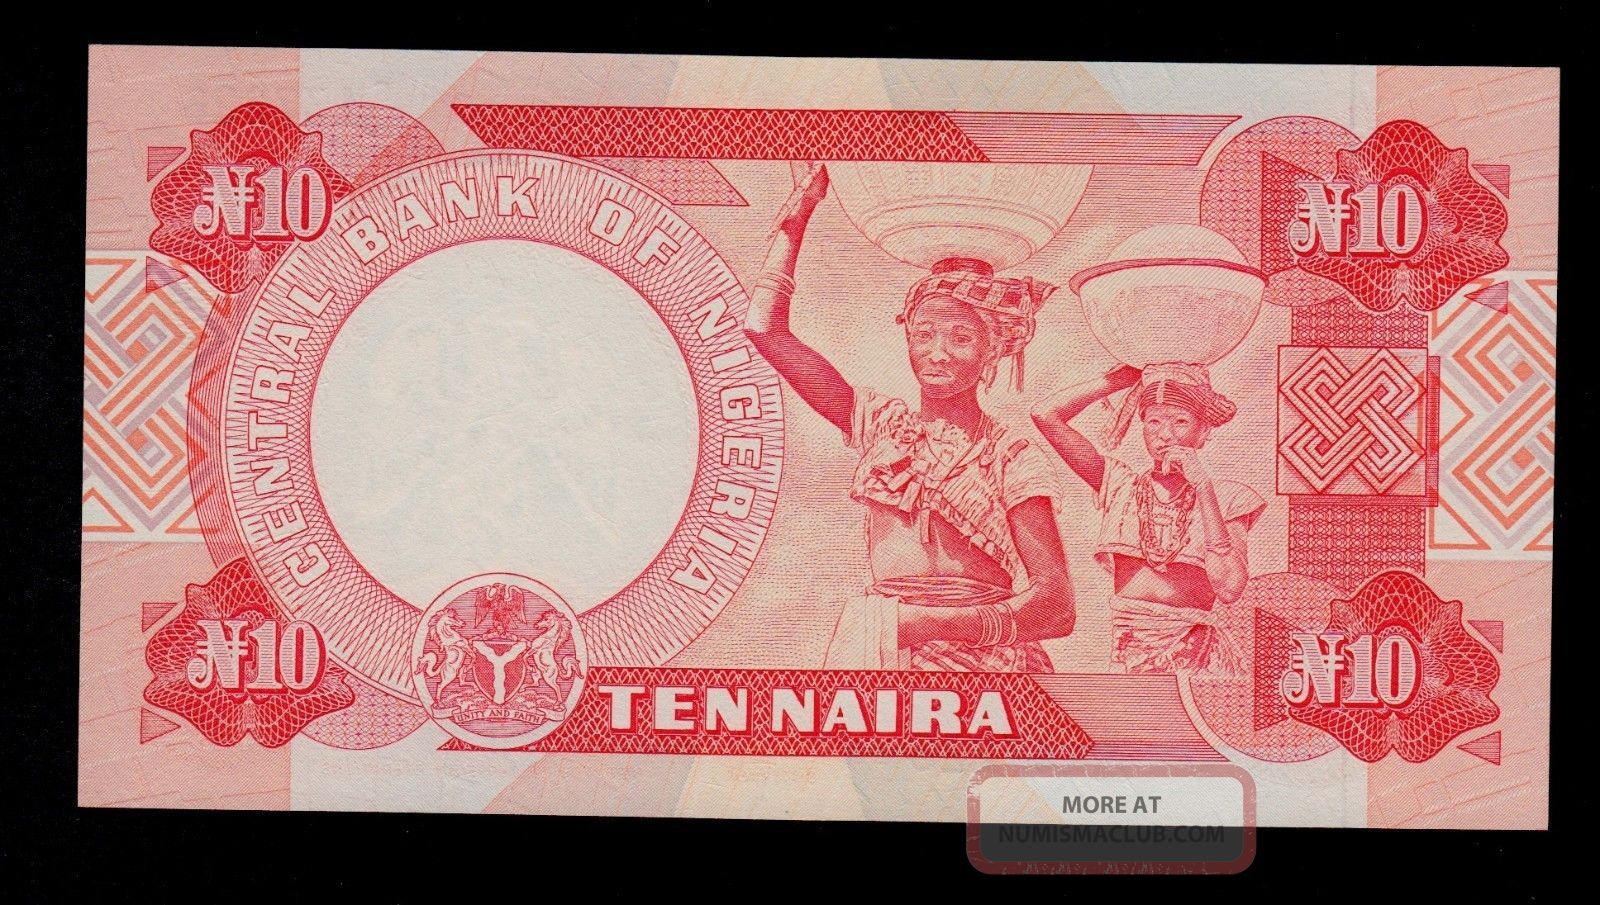 0.00271 btc to naira